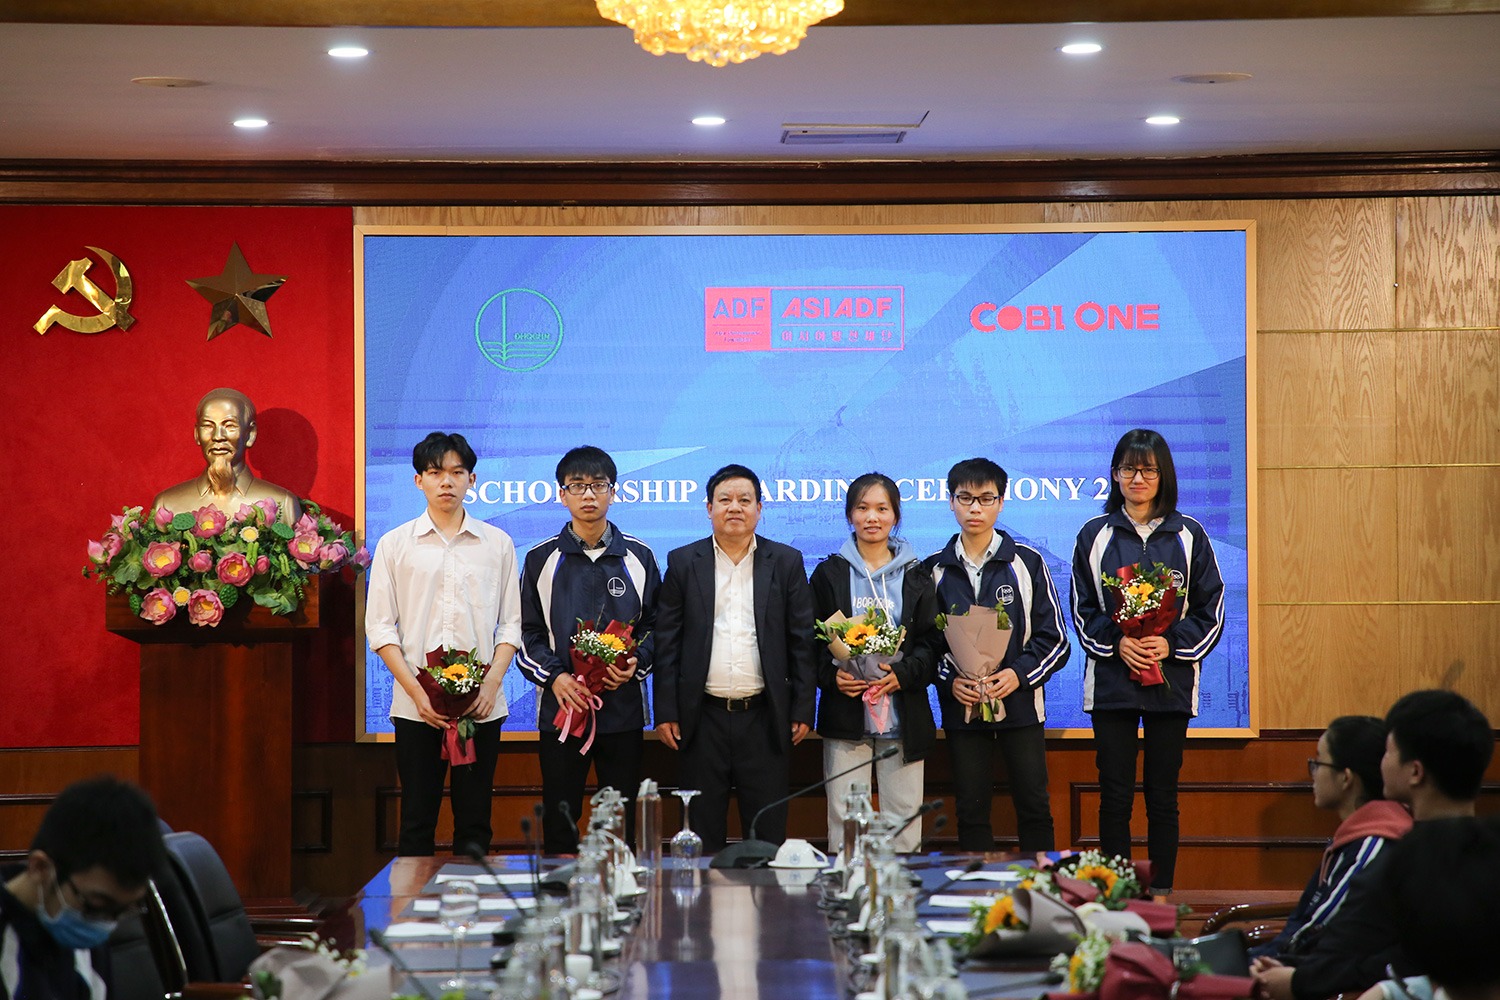 Bùi Minh Hiếu (đứng thứ hai, bên phải ảnh) nhận học bổng ADF dành cho thủ khoa tuyển sinh khóa QH-2019